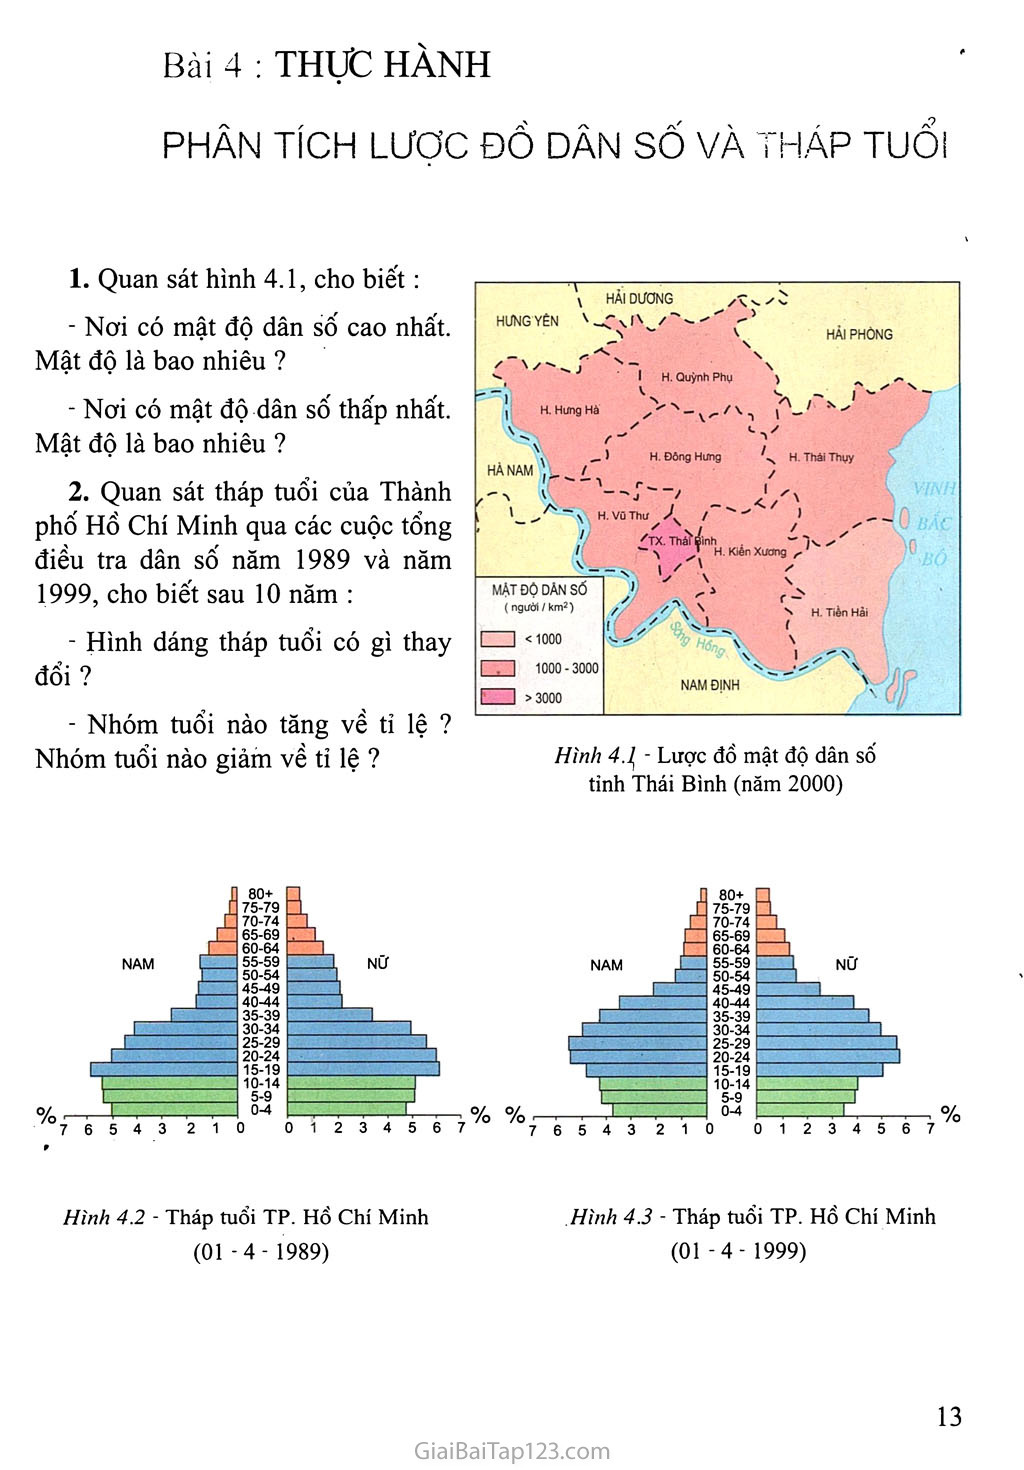 Bài 4: Thực hành: Phân tích lược đồ dân số và tháp tuổi trang 1